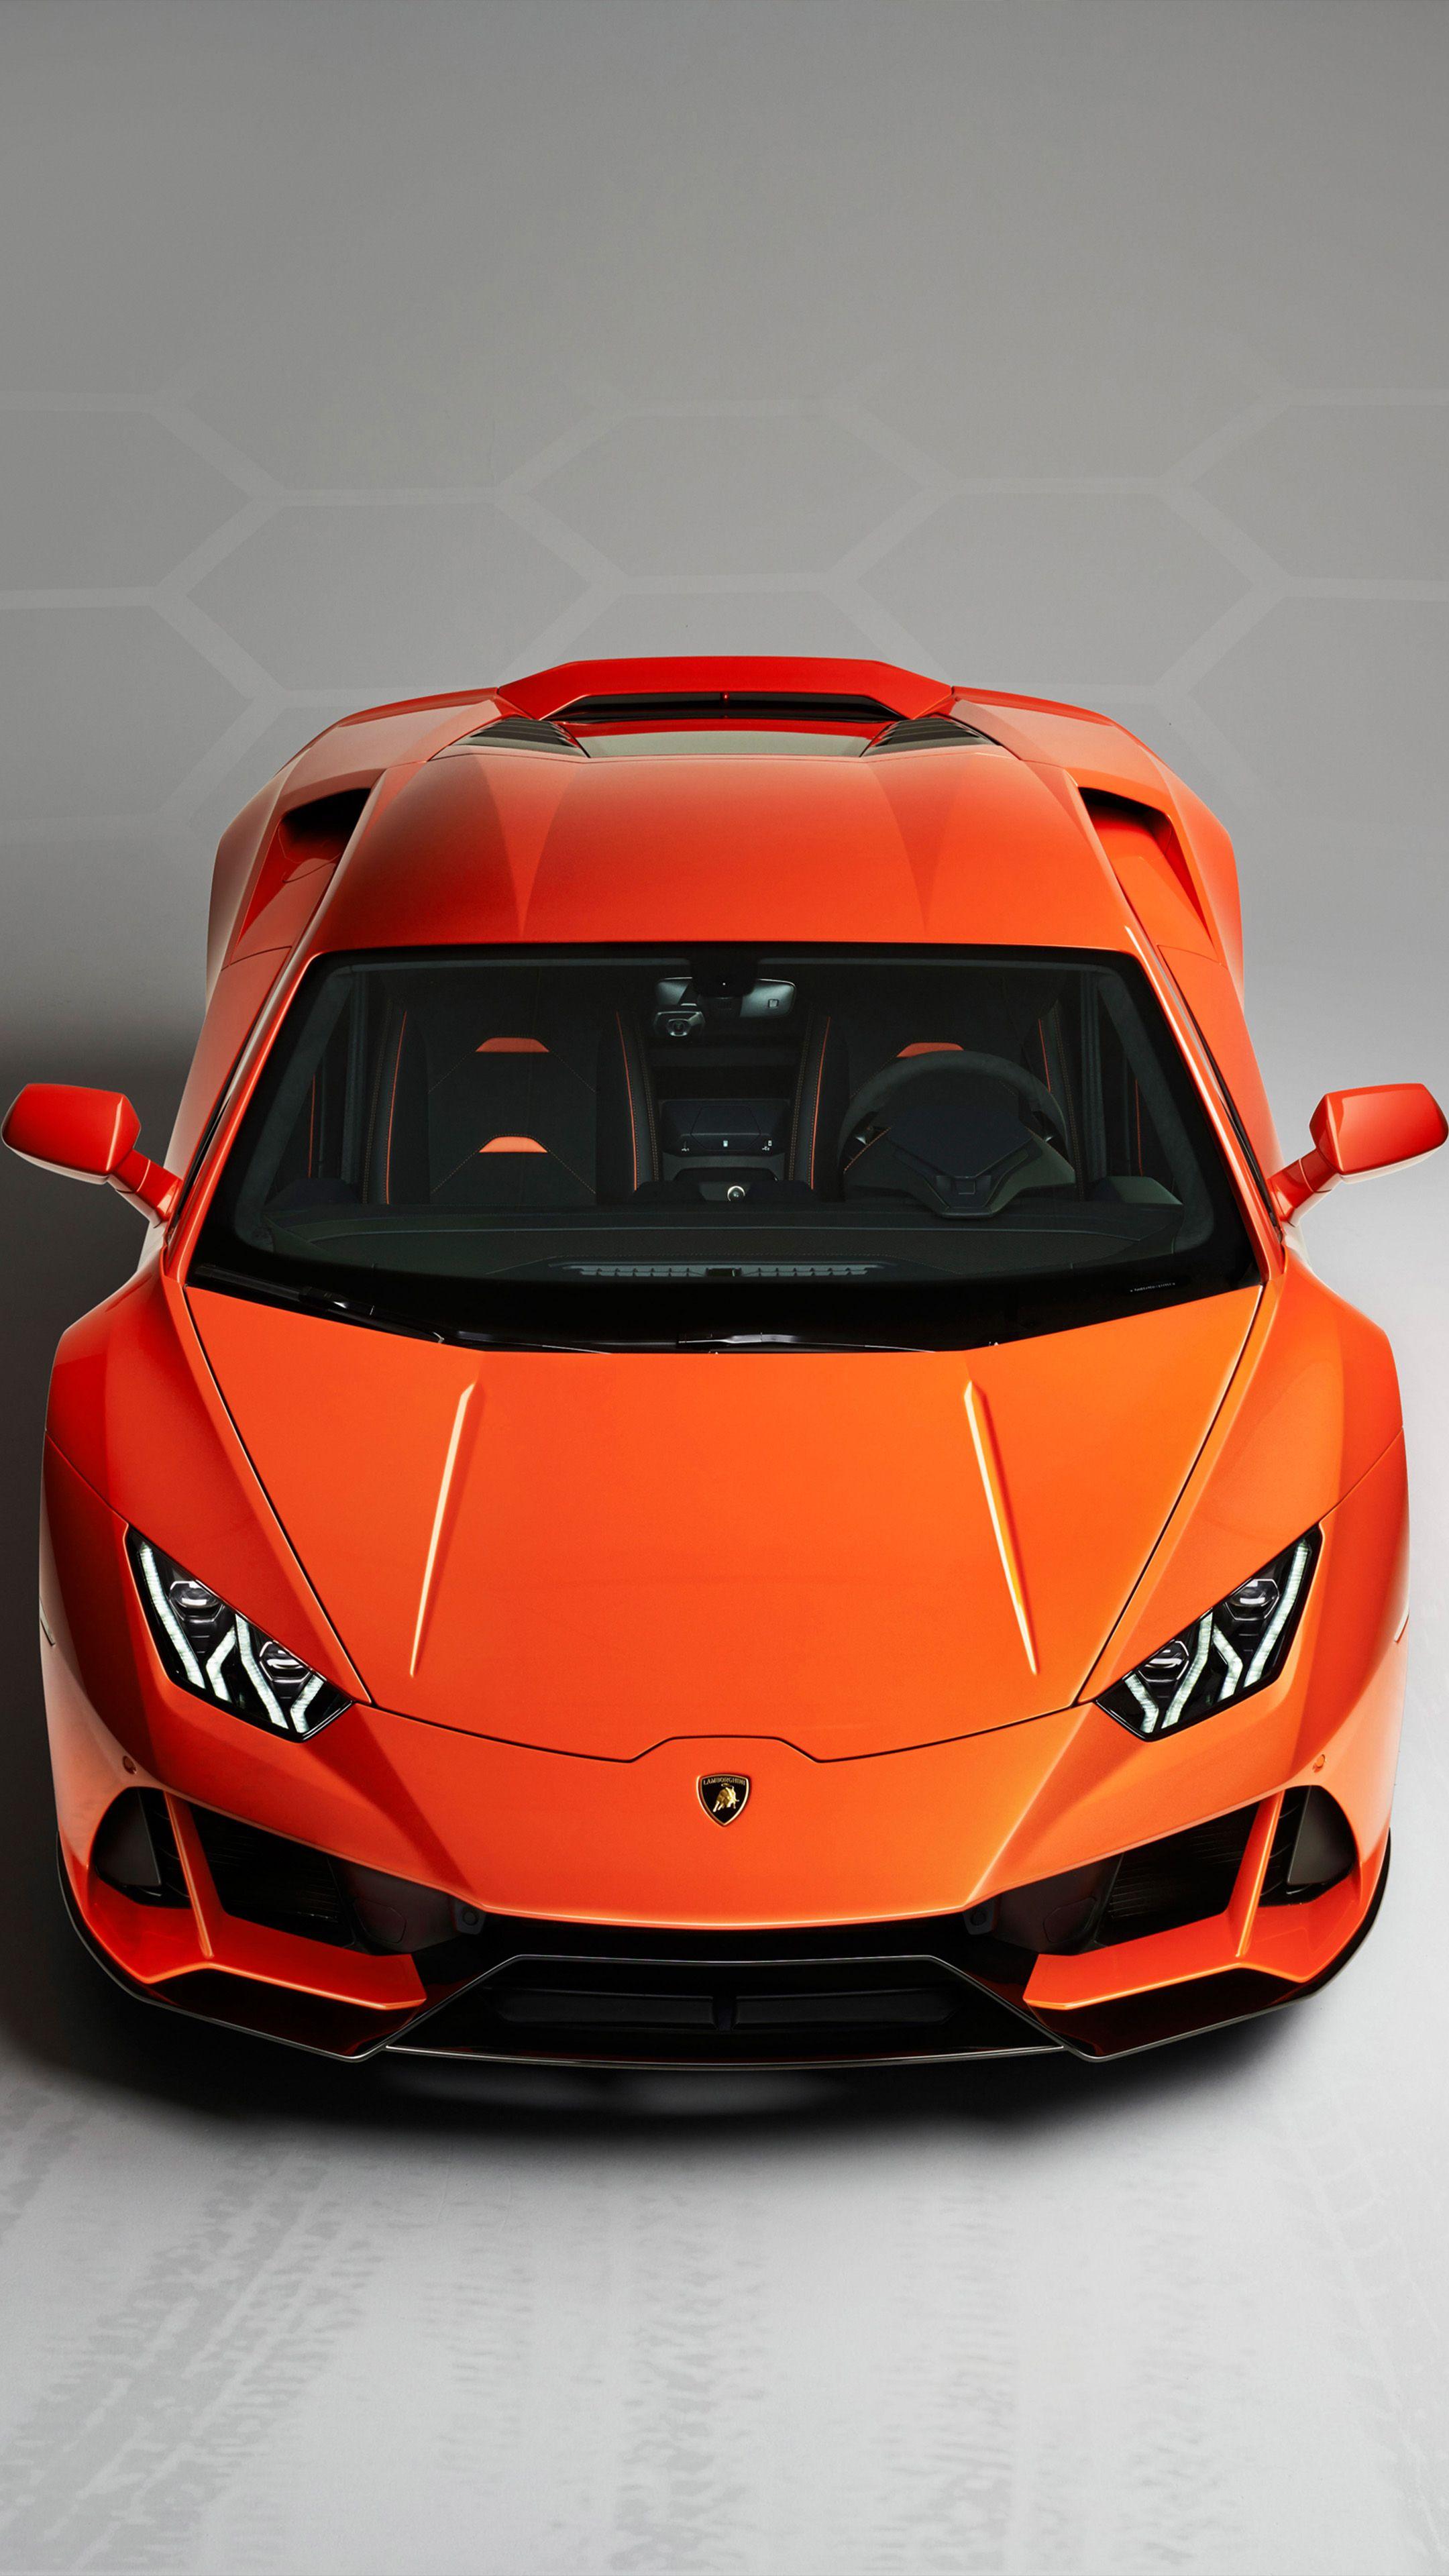 Lamborghini Huracan Evo 2019. Car Wallpaper. Lamborghini